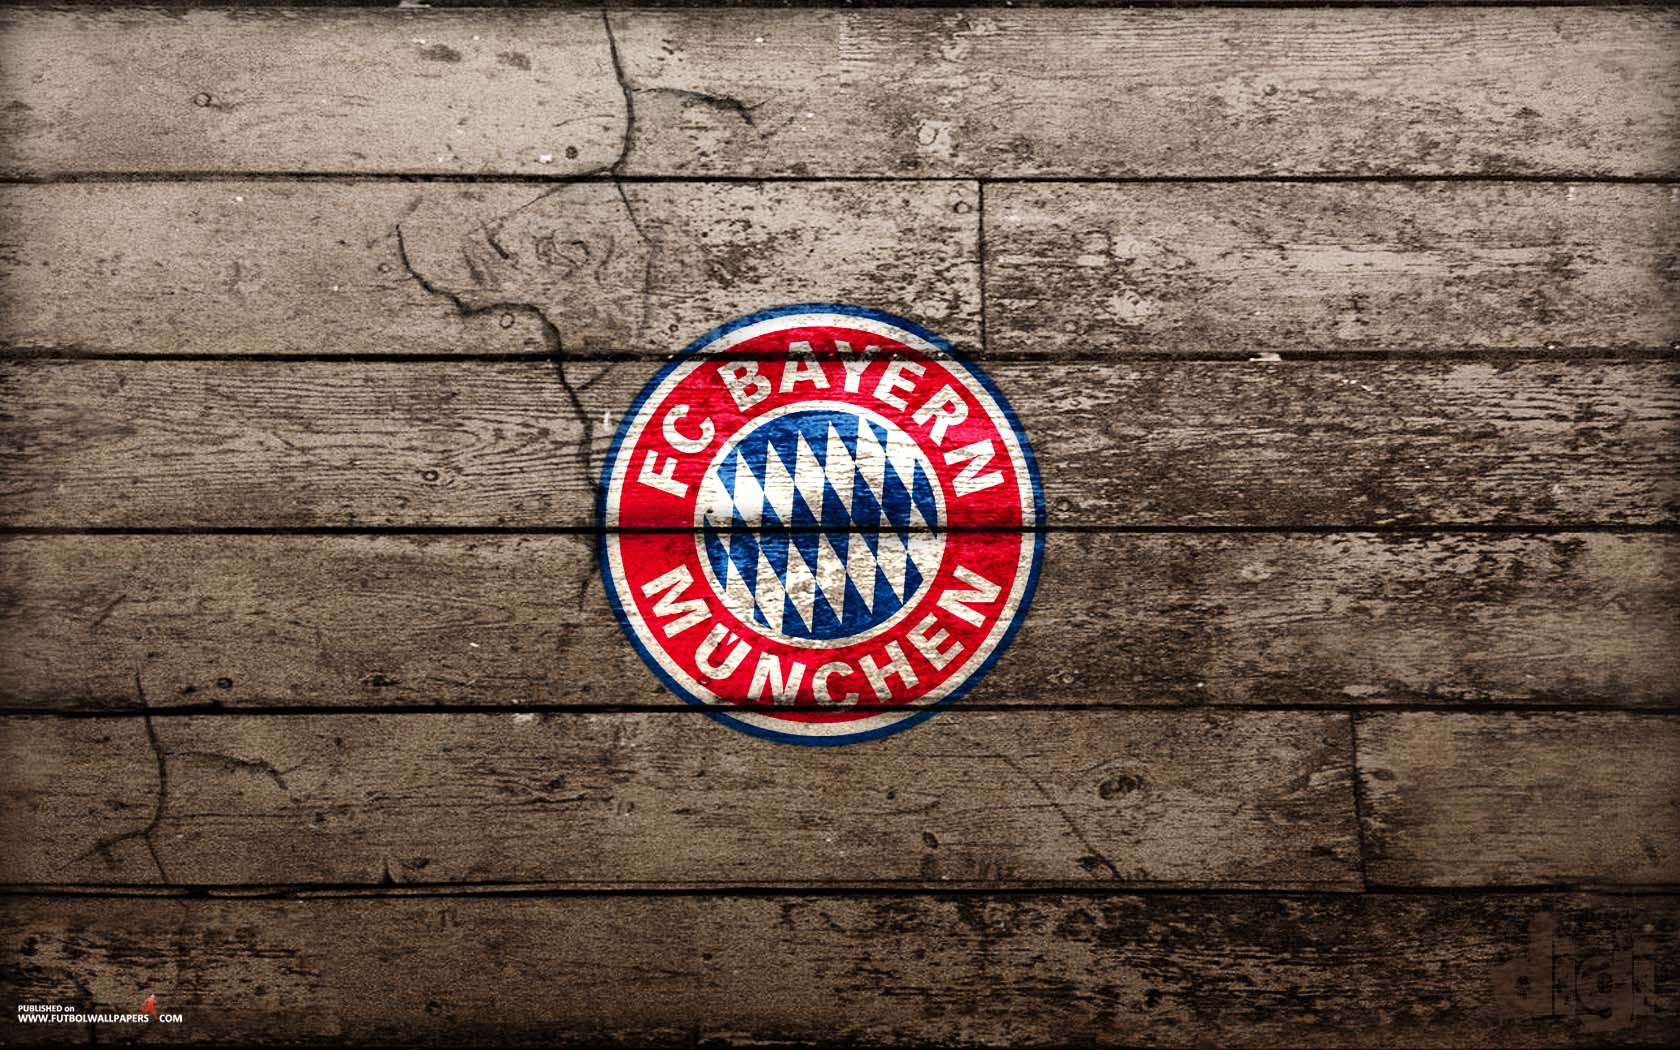 77 Fc Bayern Munich Hd Wallpapers On Wallpapersafari